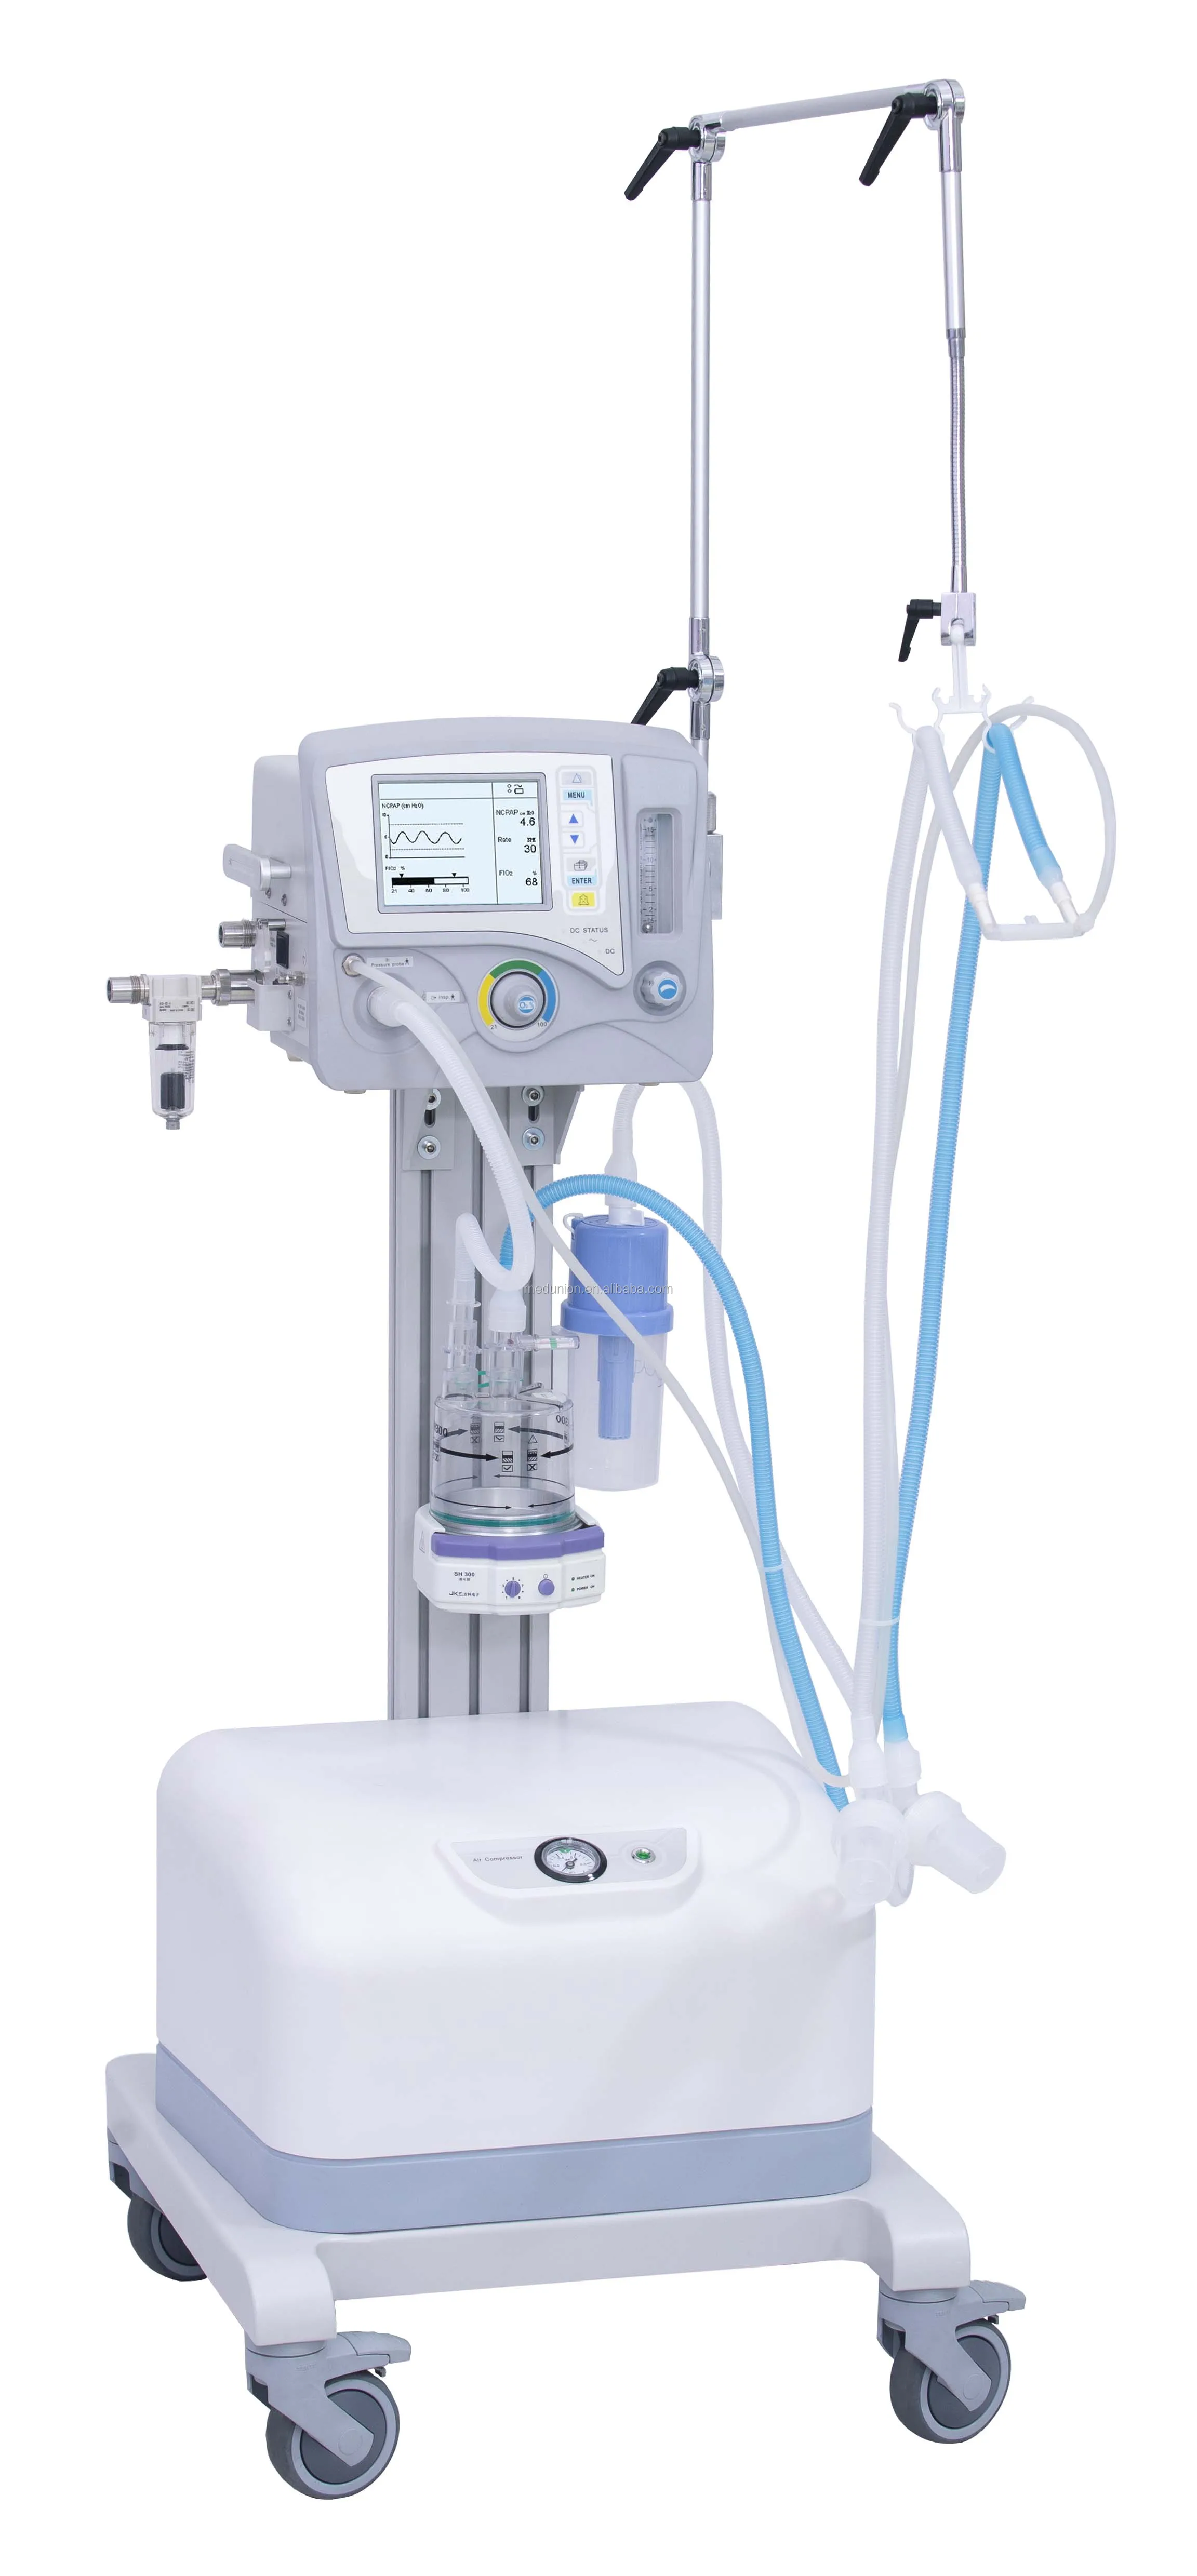 移动紧急医疗呼吸机 buy 呼吸机价格,最好的 icu 呼吸机出厂价,医院